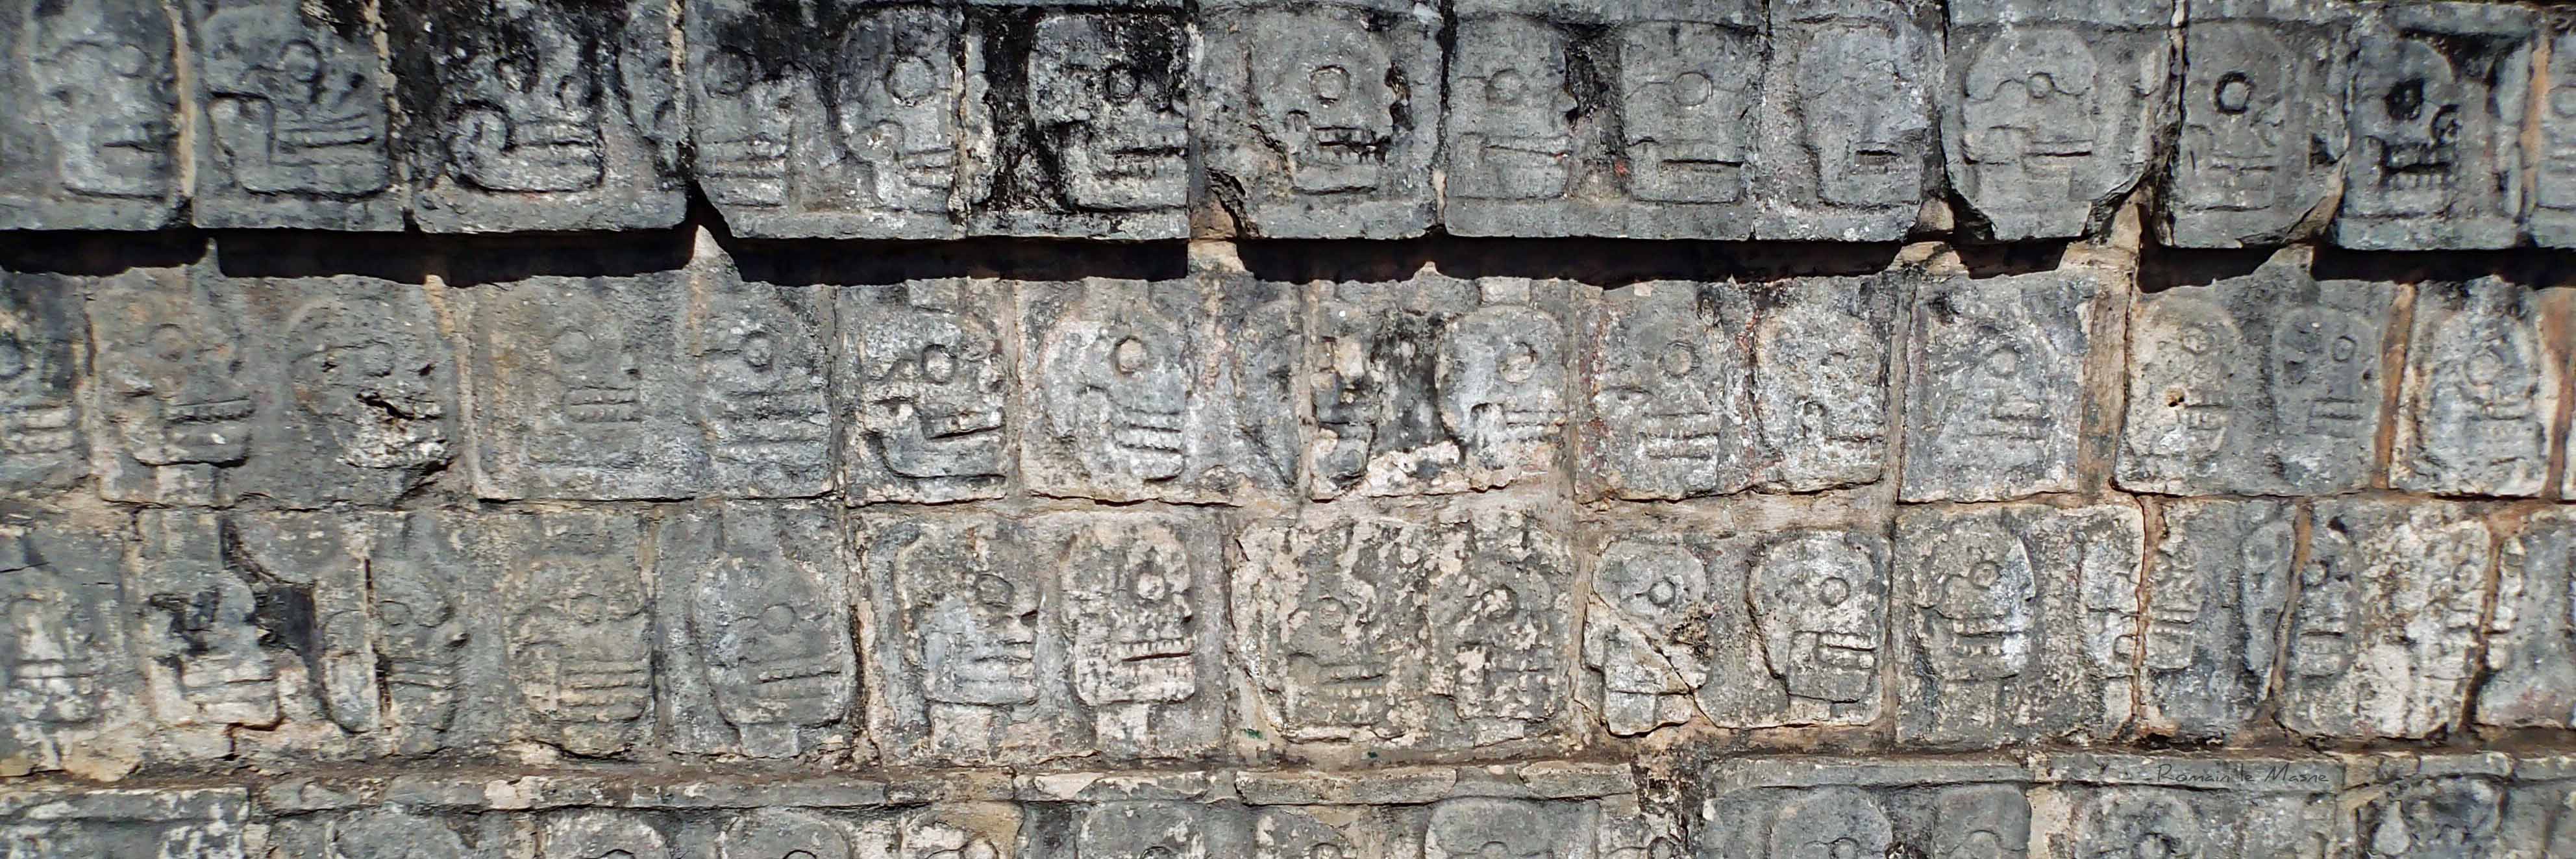 Danse macabre - Chichén Itzá - Yucatán